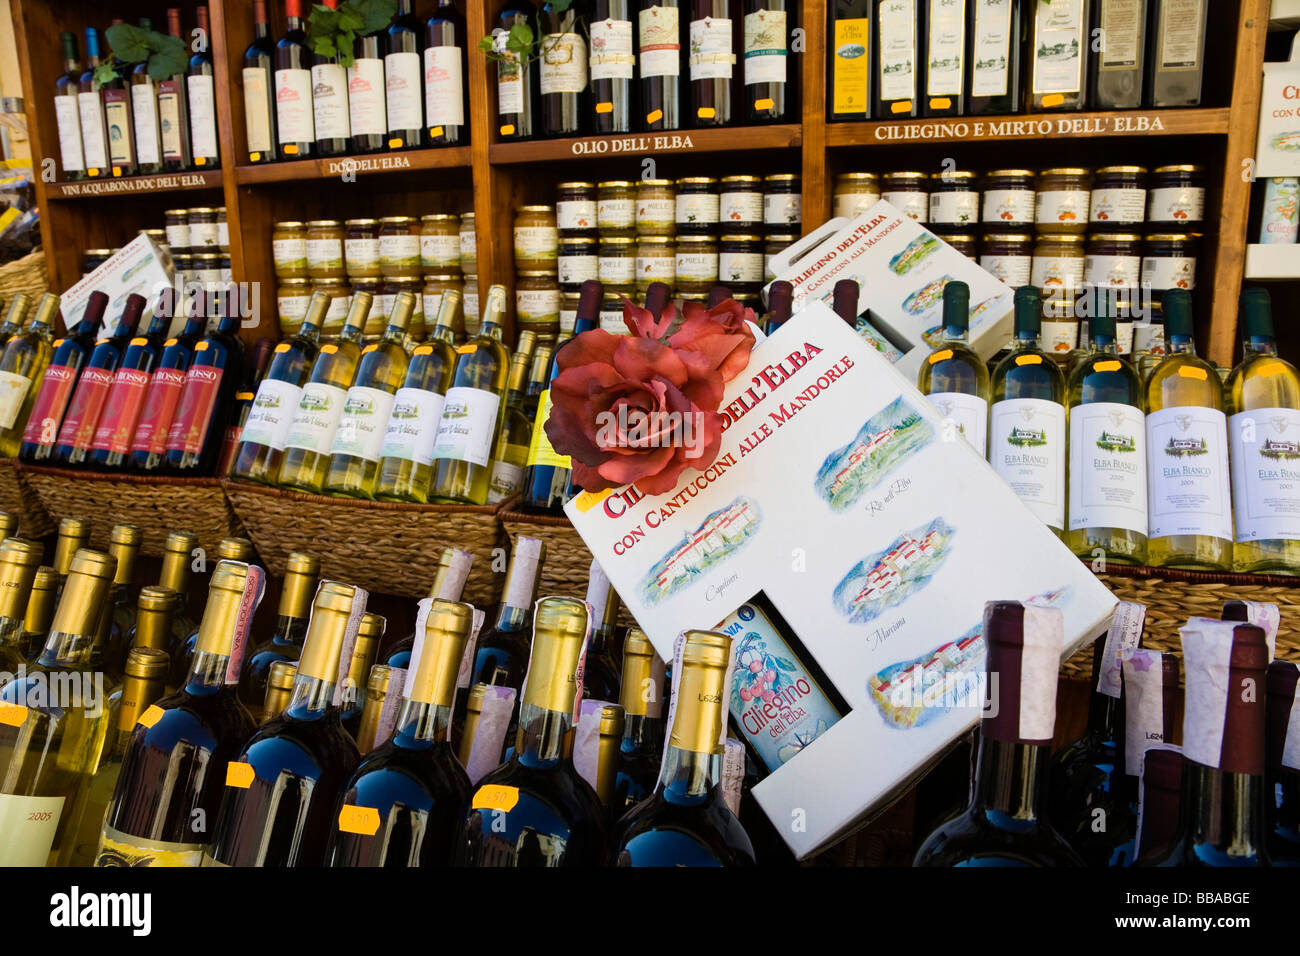 Wines from Elba, wine shop in Marina di Campo, Elba, Tuscany, Italy, Europe Stock Photo